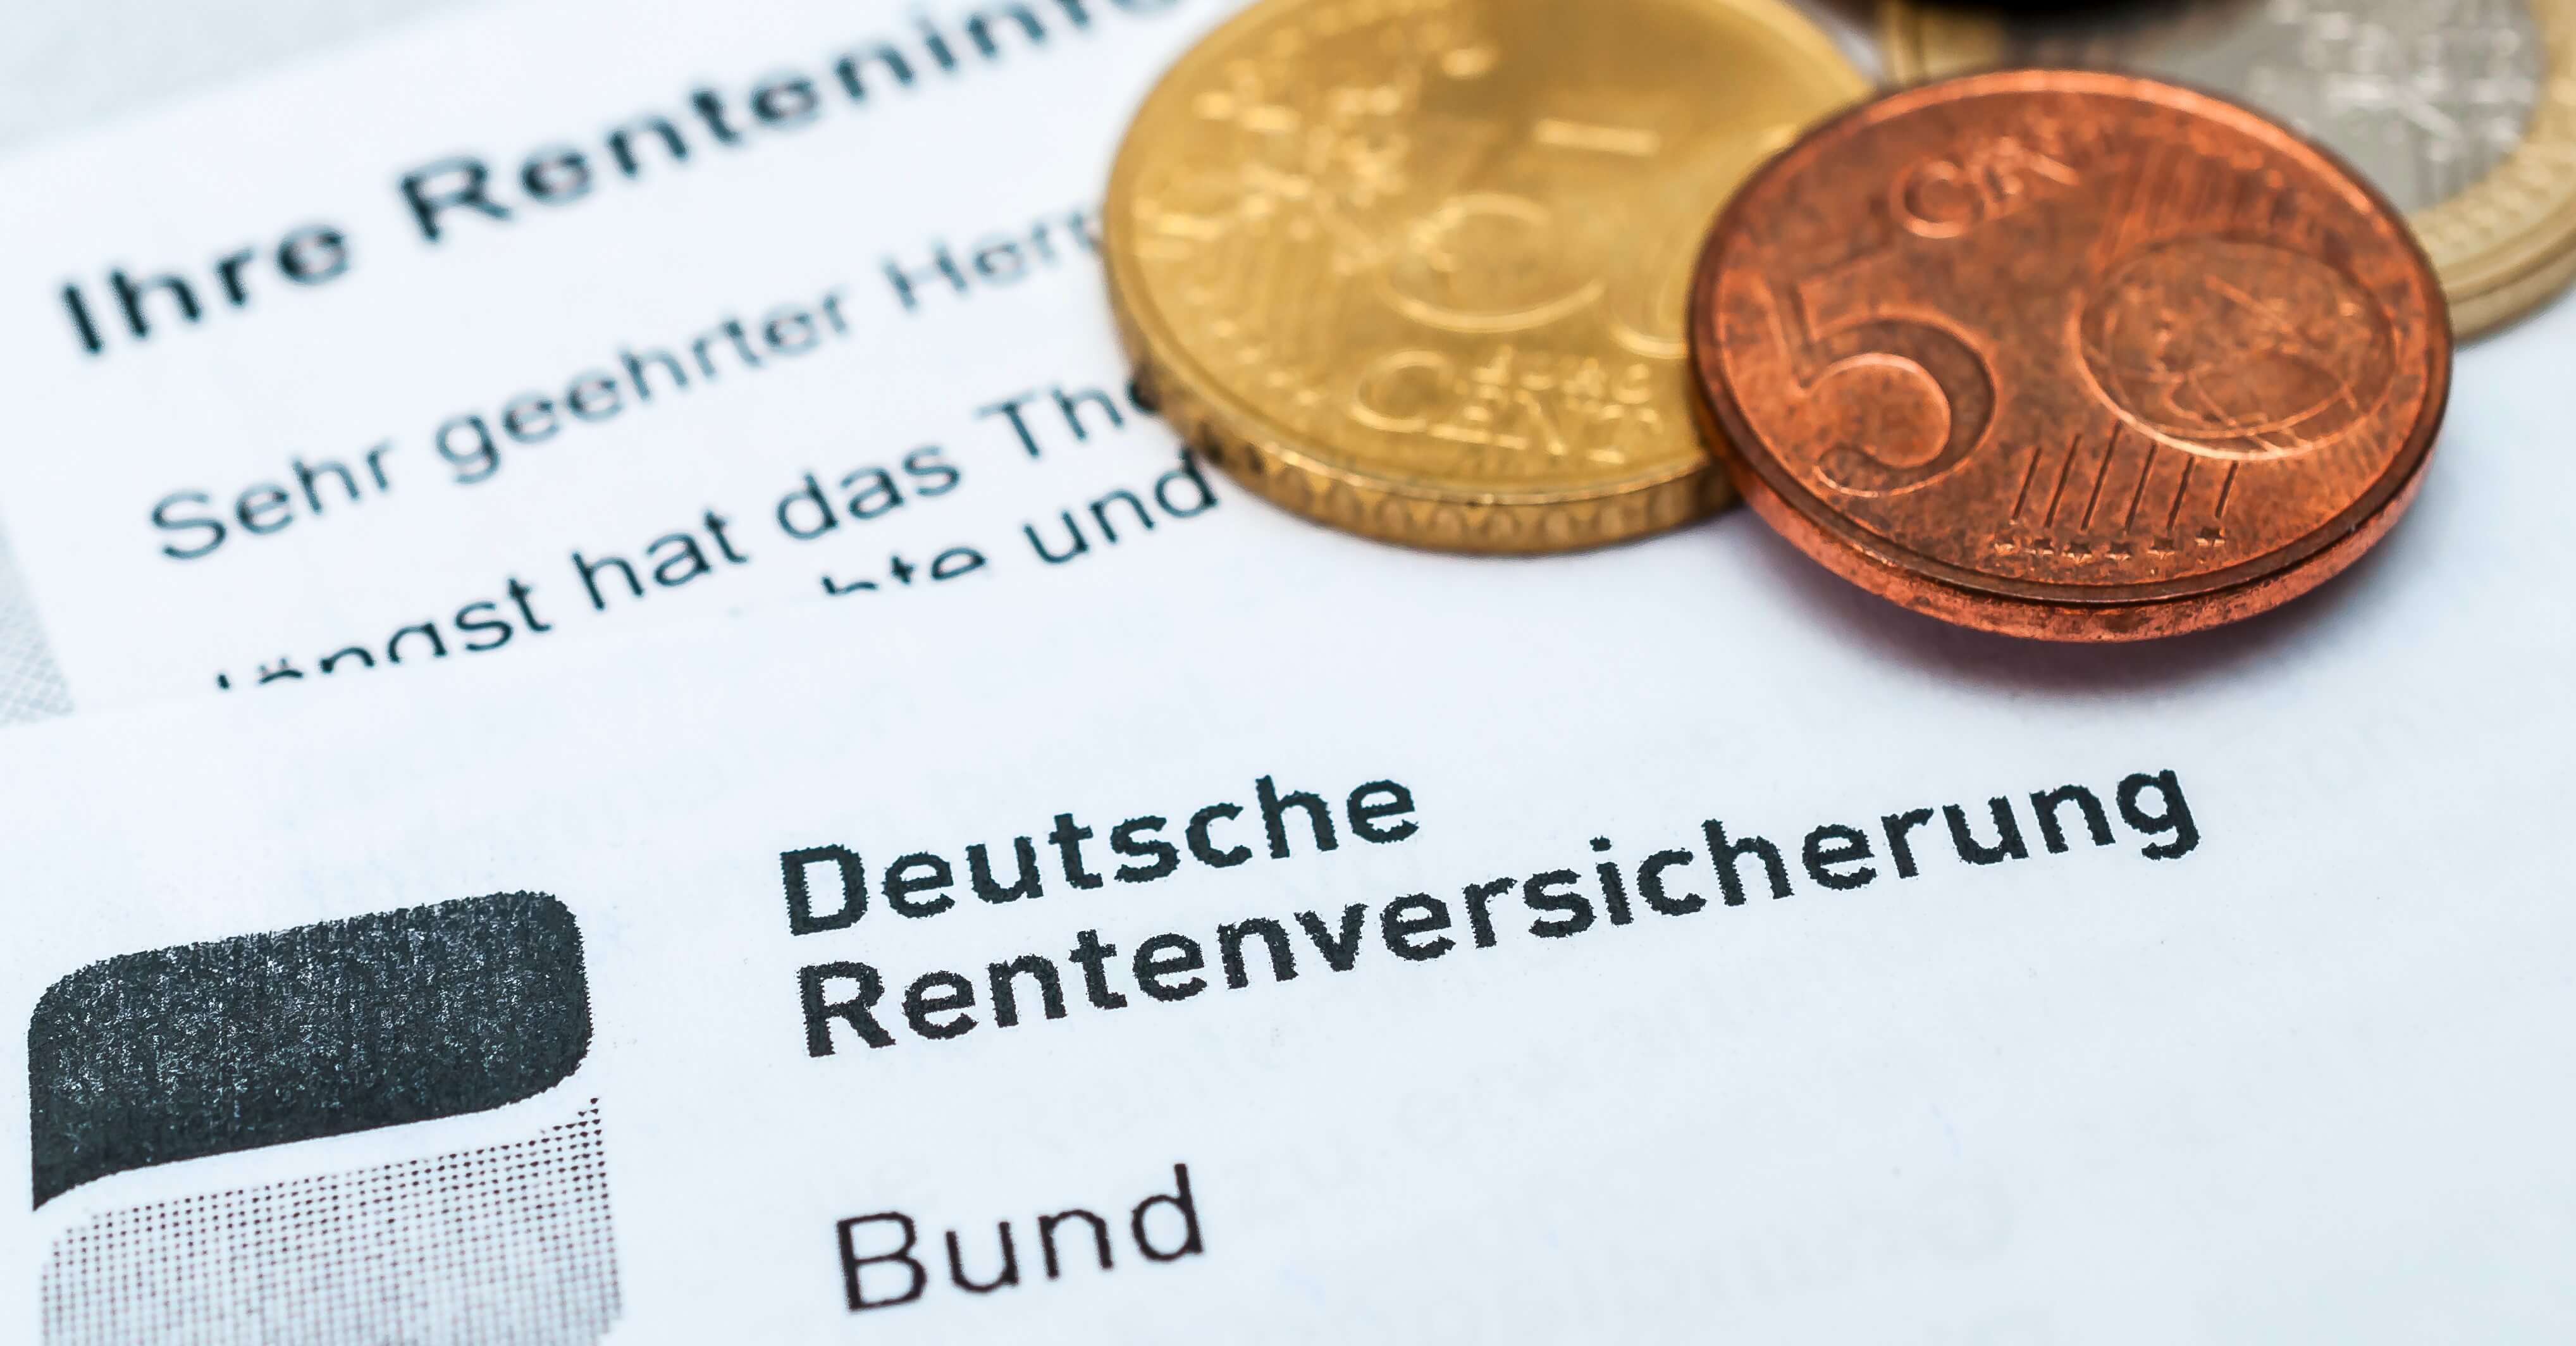 Ein Brief der Deutschen Rentenversicherung, darauf liegen einige Münzen